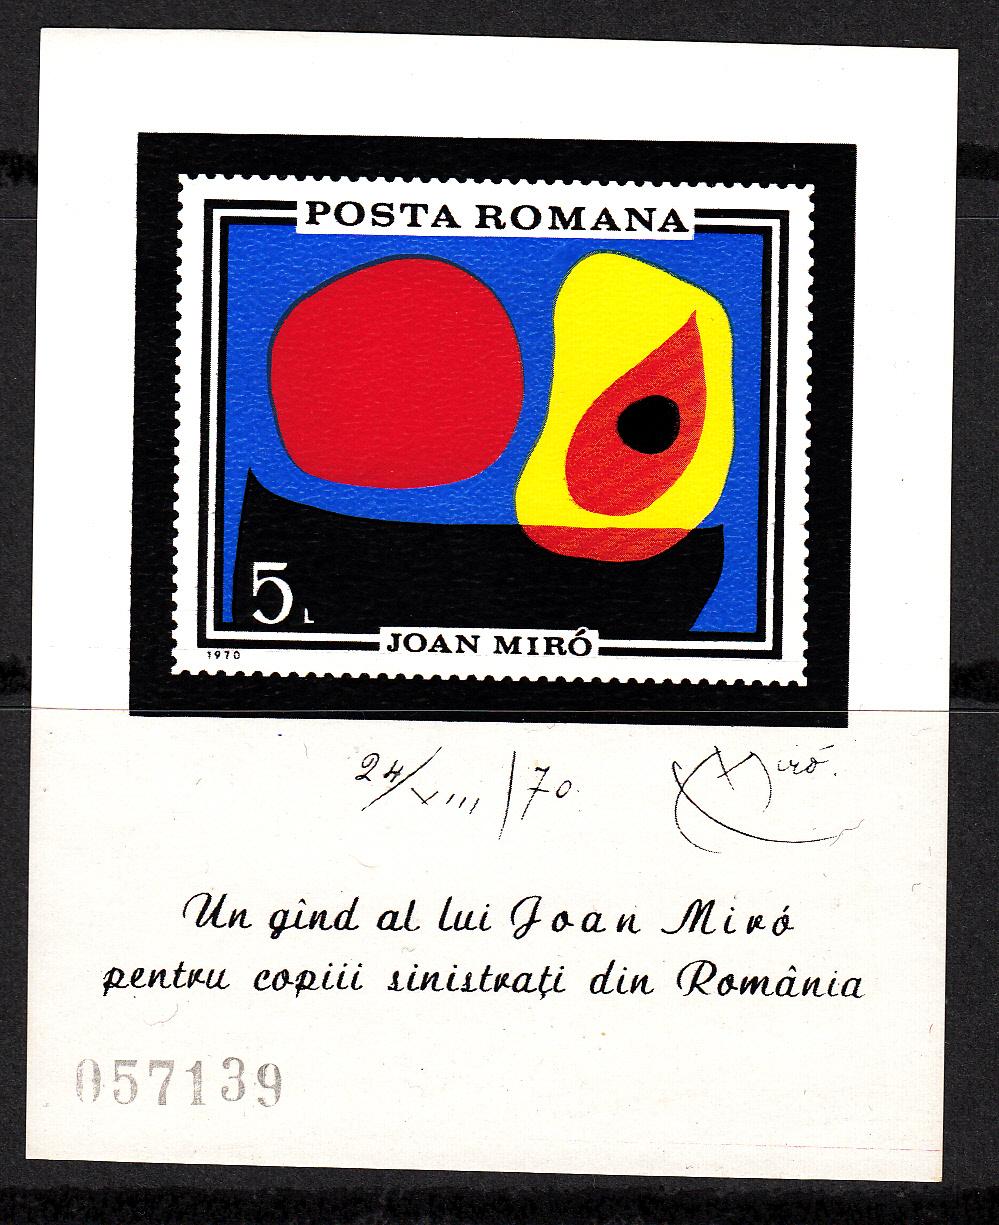 Foto Rumanía - Romania - Hojitas Bloque - HB 81 1970 Joan Miró Nueva, sin fijasellos MNH